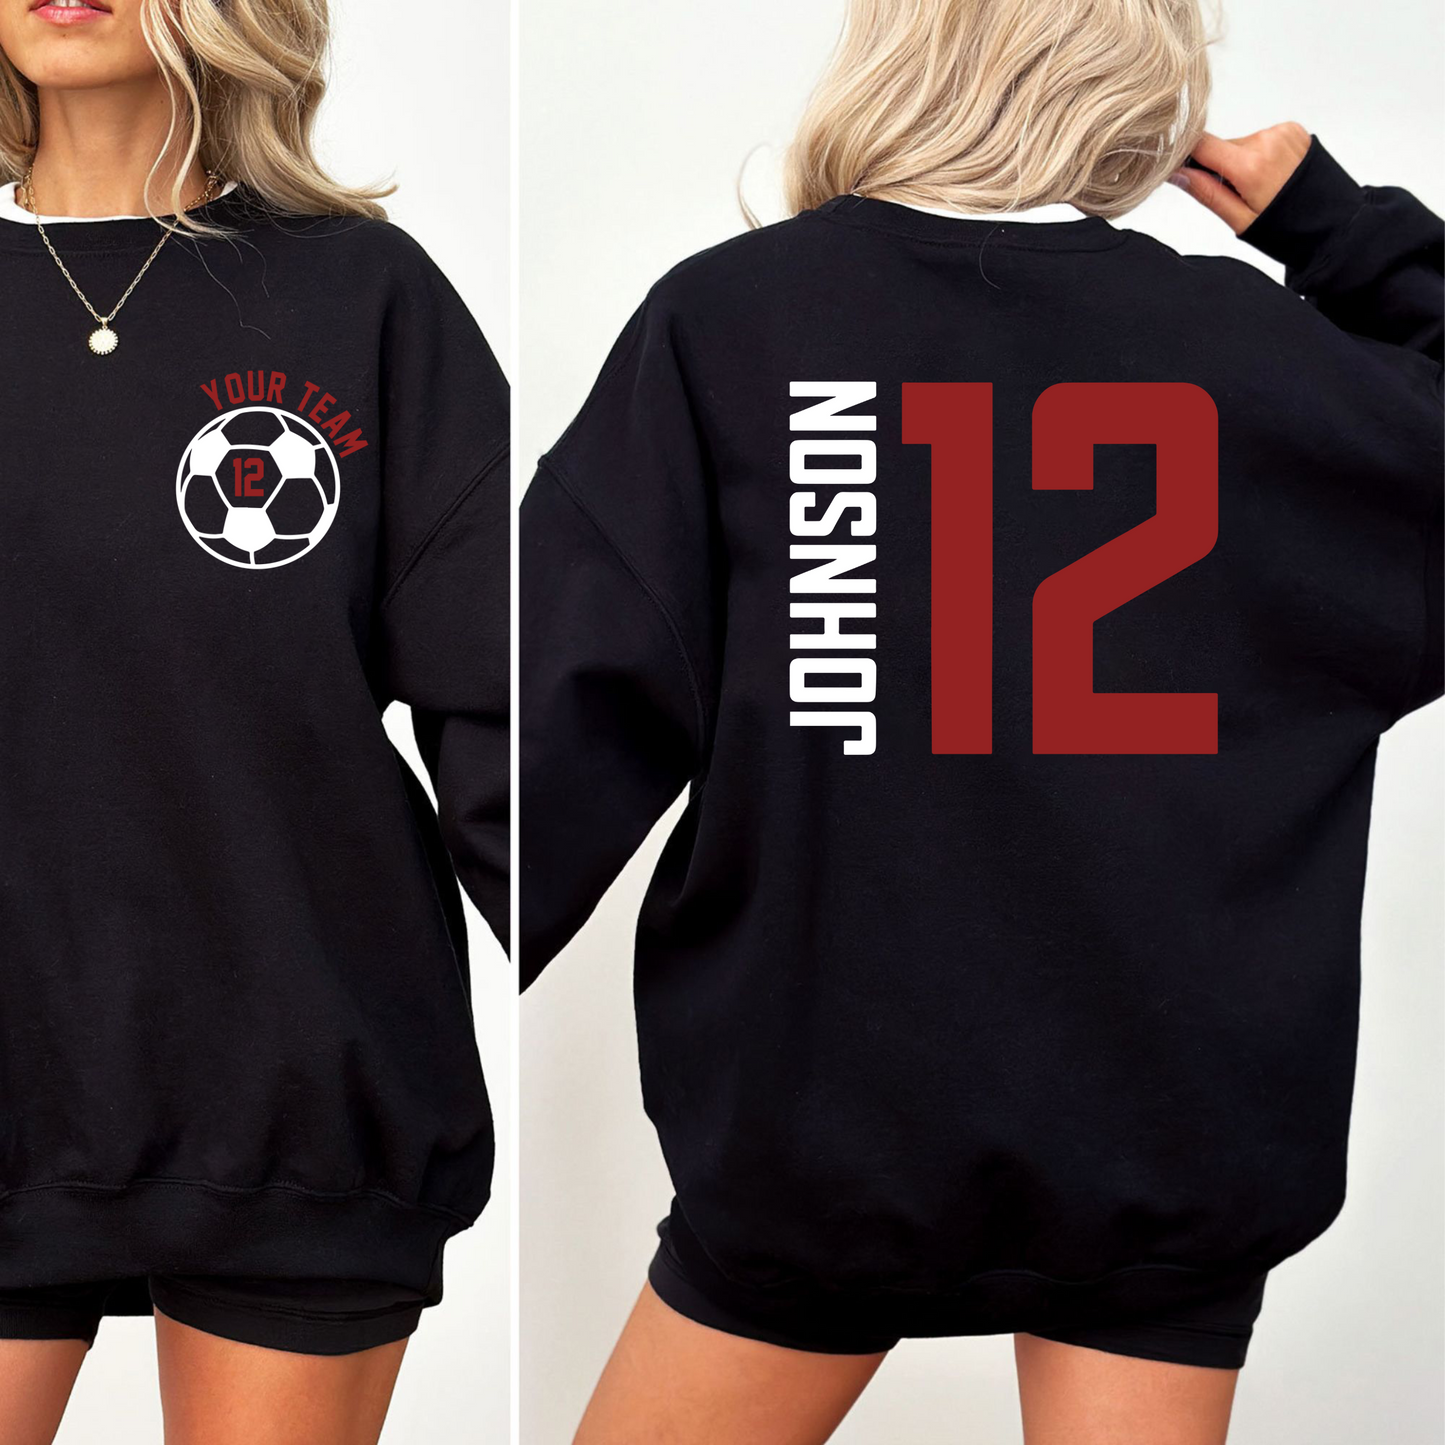 Personalisierte Fußballmama-Trikots – Feiern Sie 'Ihr Team' mit Namen und Nummer